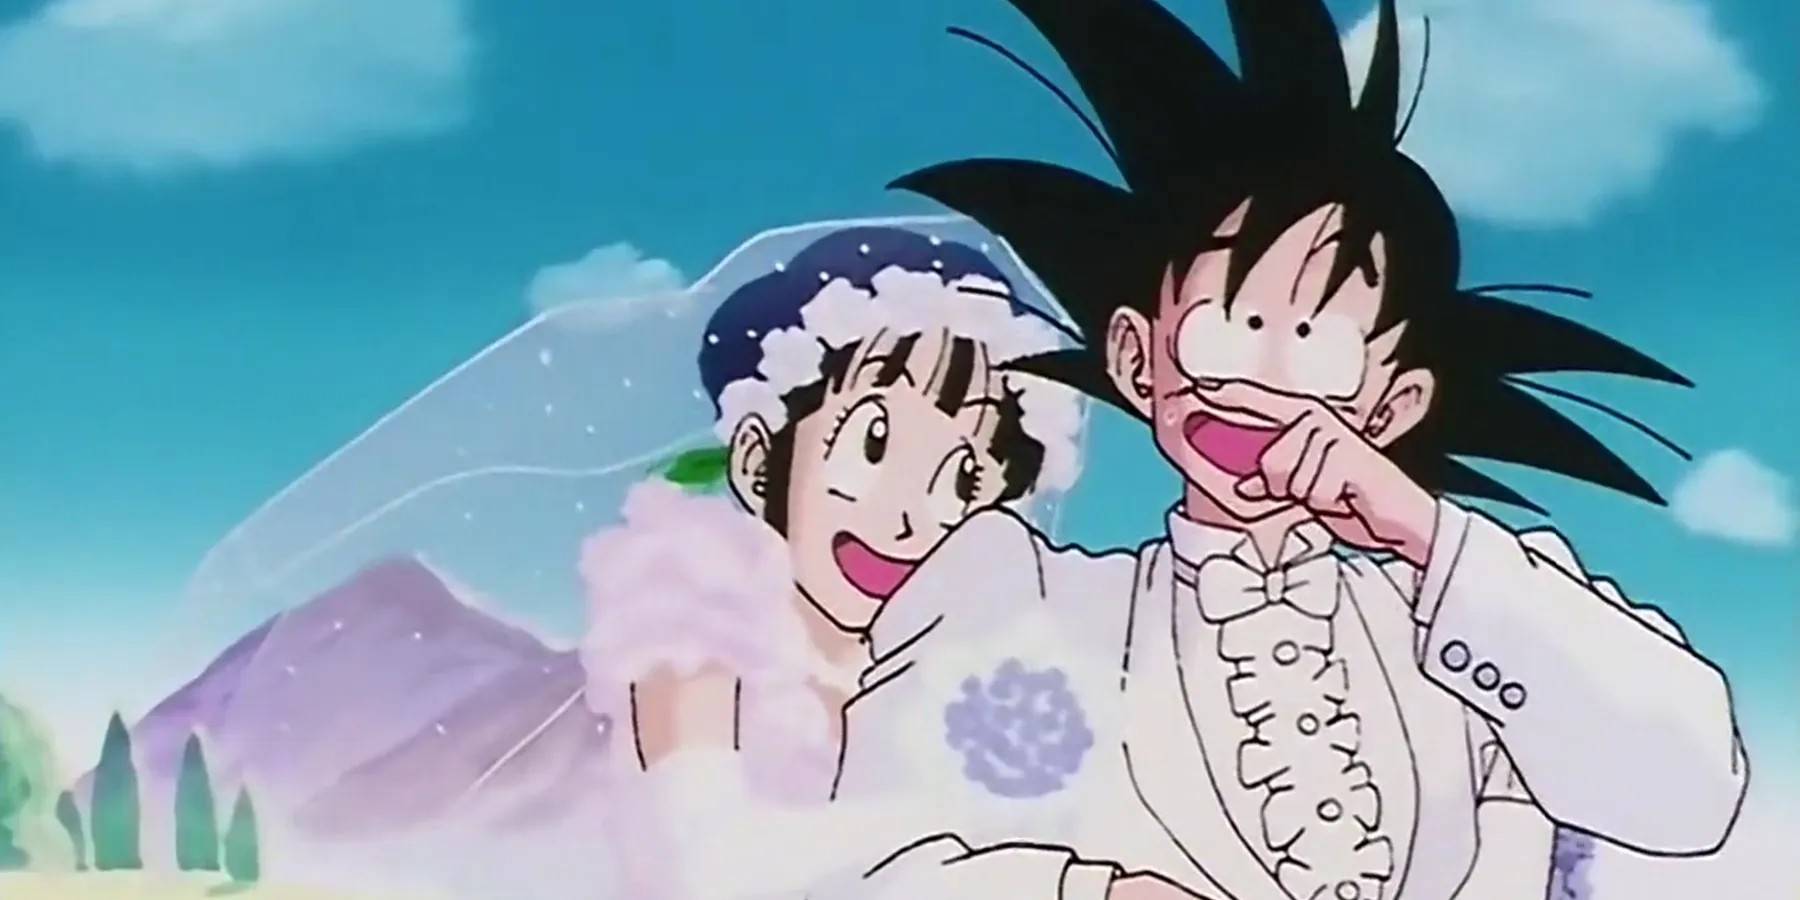 Goku and chichi wedding